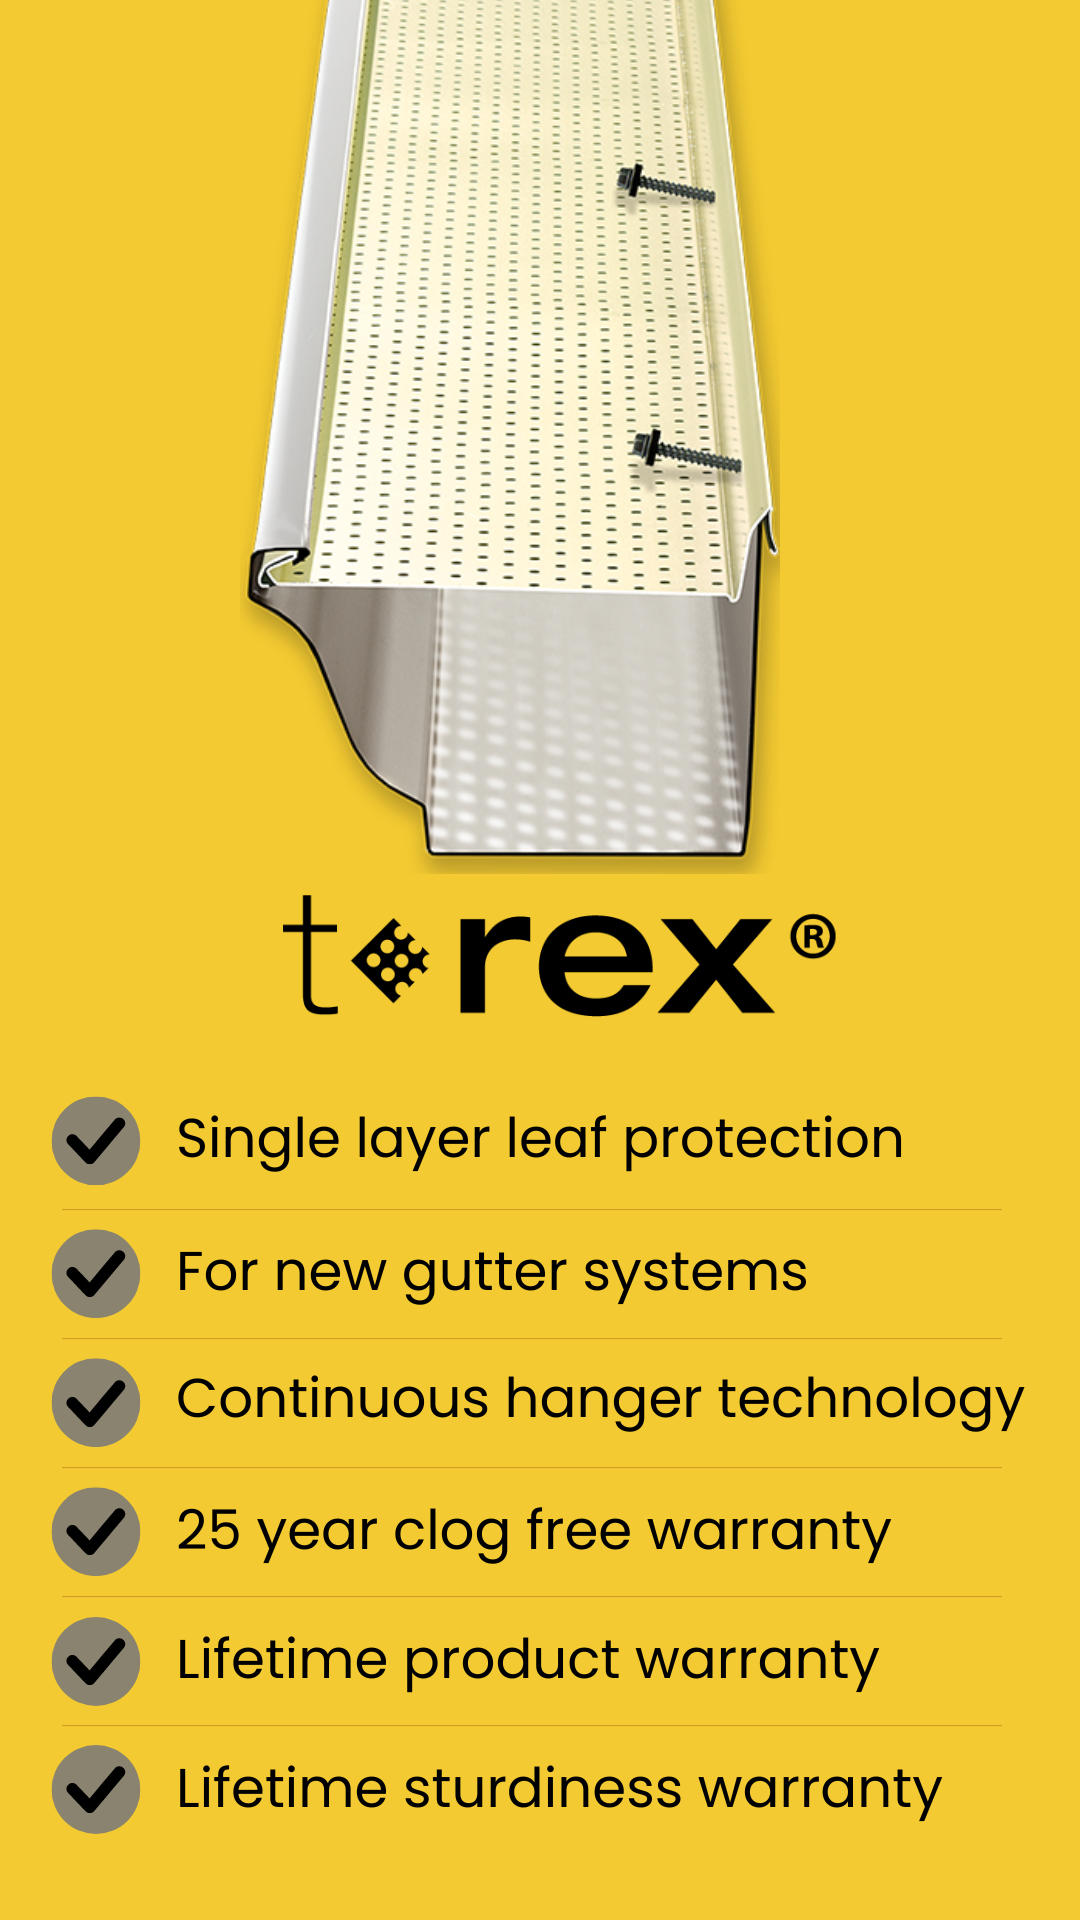 t-rex gutter cover product comparison image